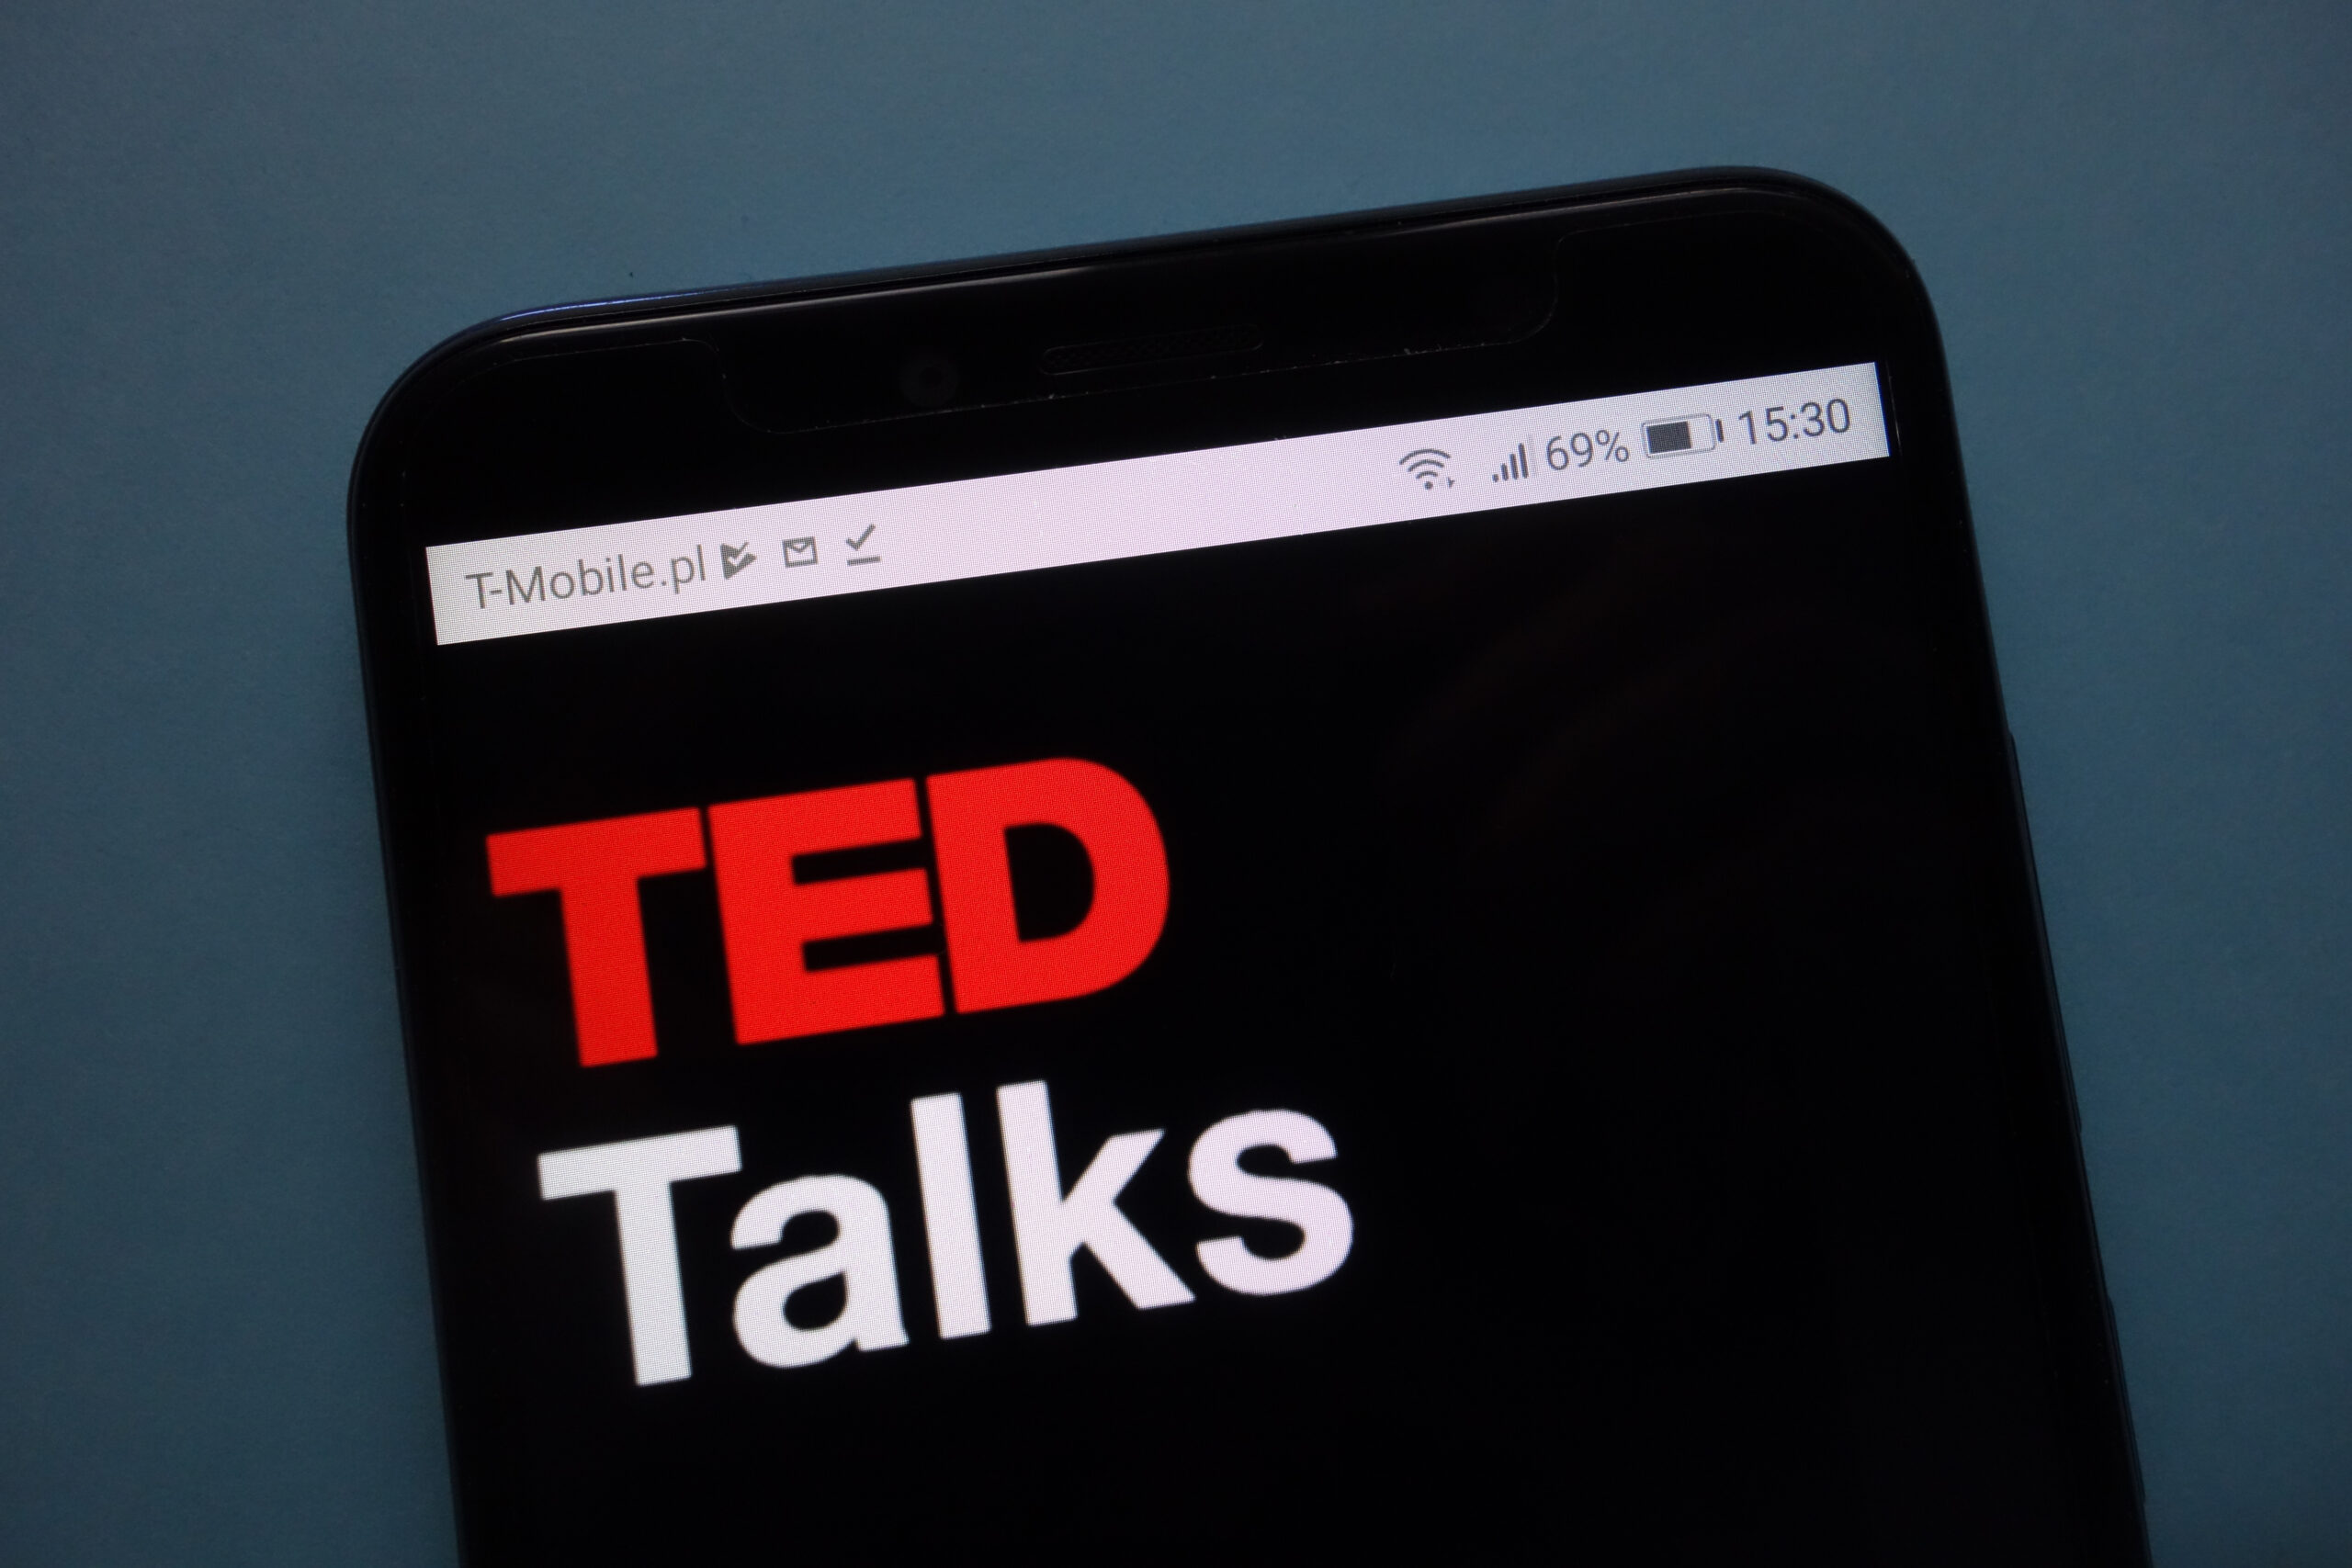 Avance na carreira: estes 8 Ted Talks de sucesso vão te inspirar